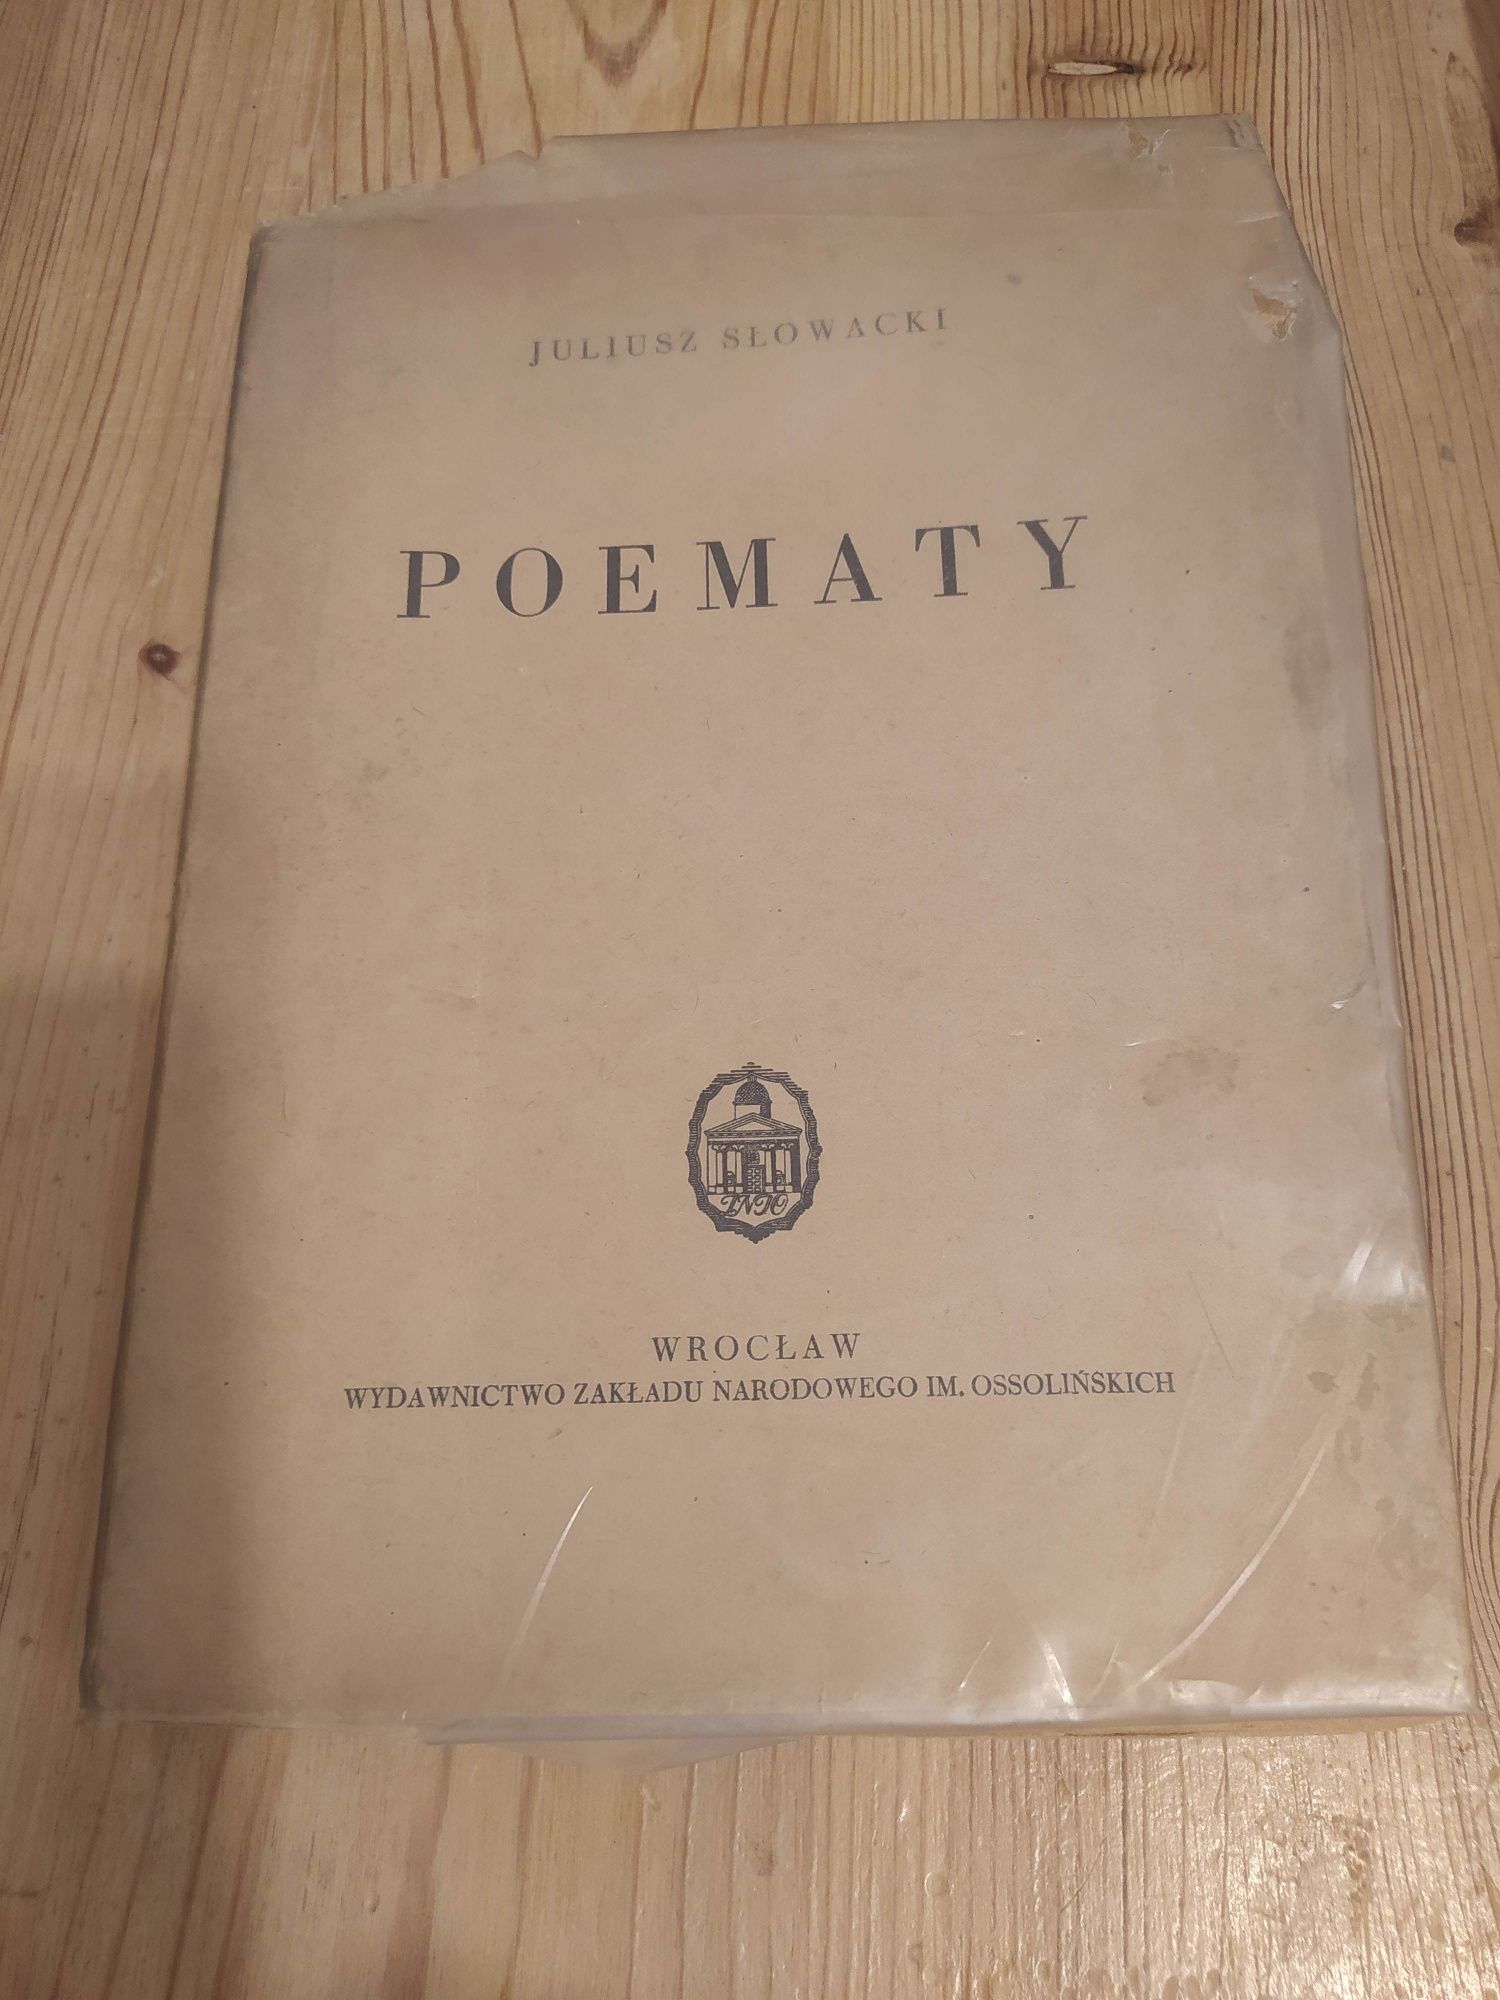 "Poematy", J. Słowacki, opracował E. Sawrymowicz